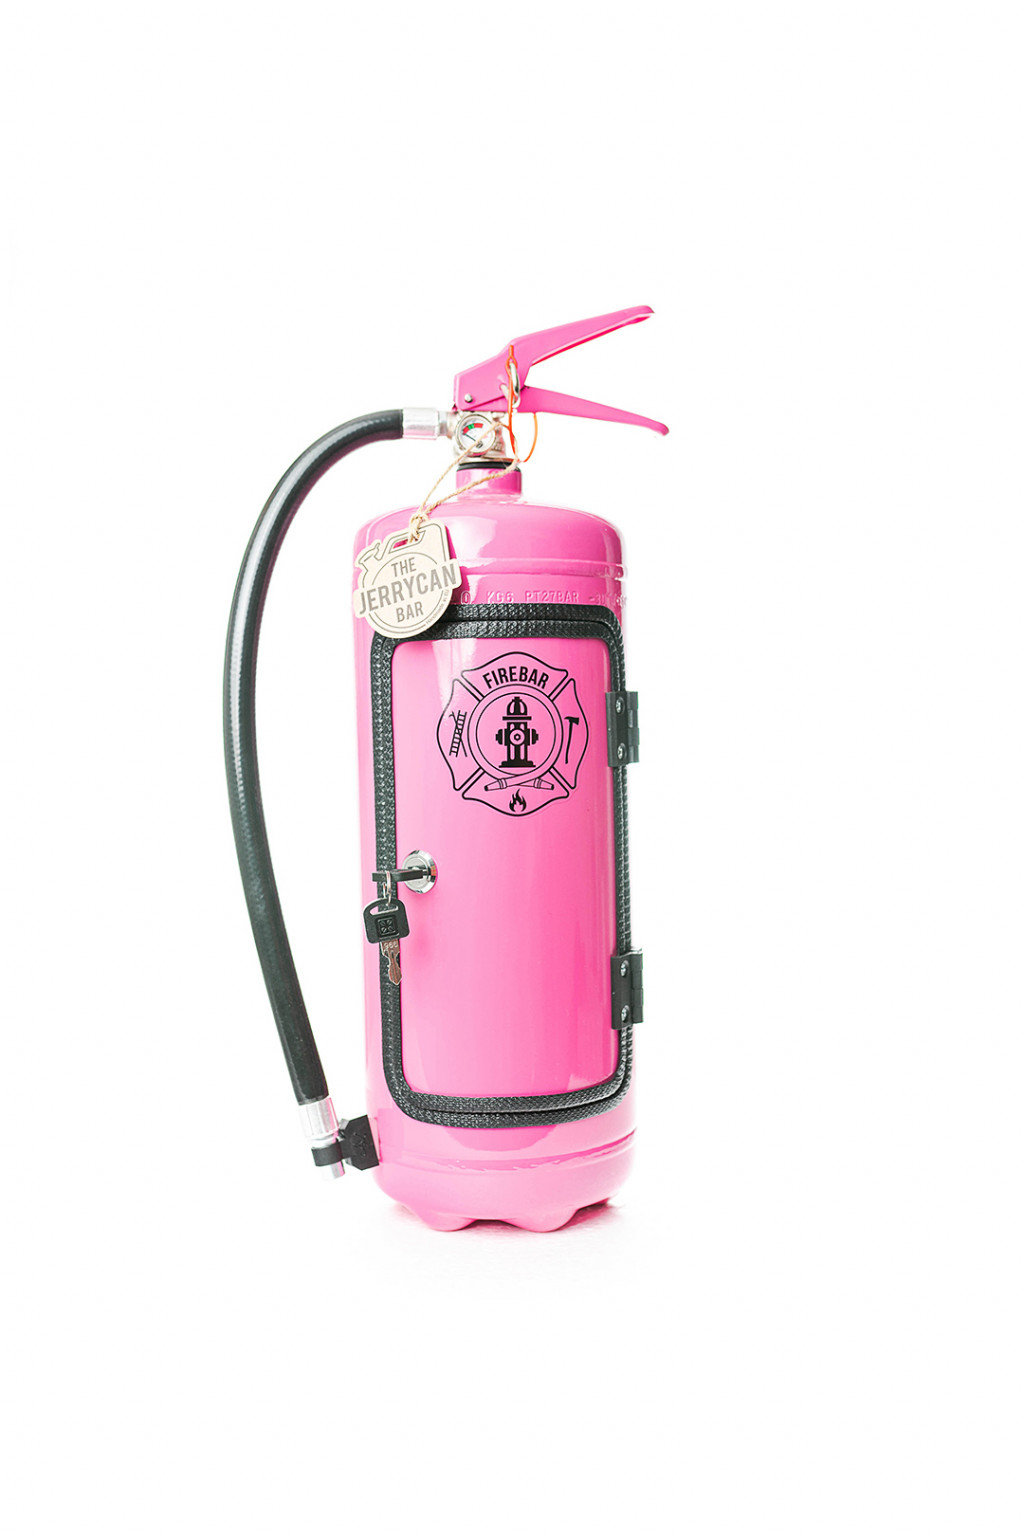 Die Firebar in pink/Minibar Feuerlöscher/Girly Sonderedition Lady  Like/JerryCan 6L : : Baumarkt